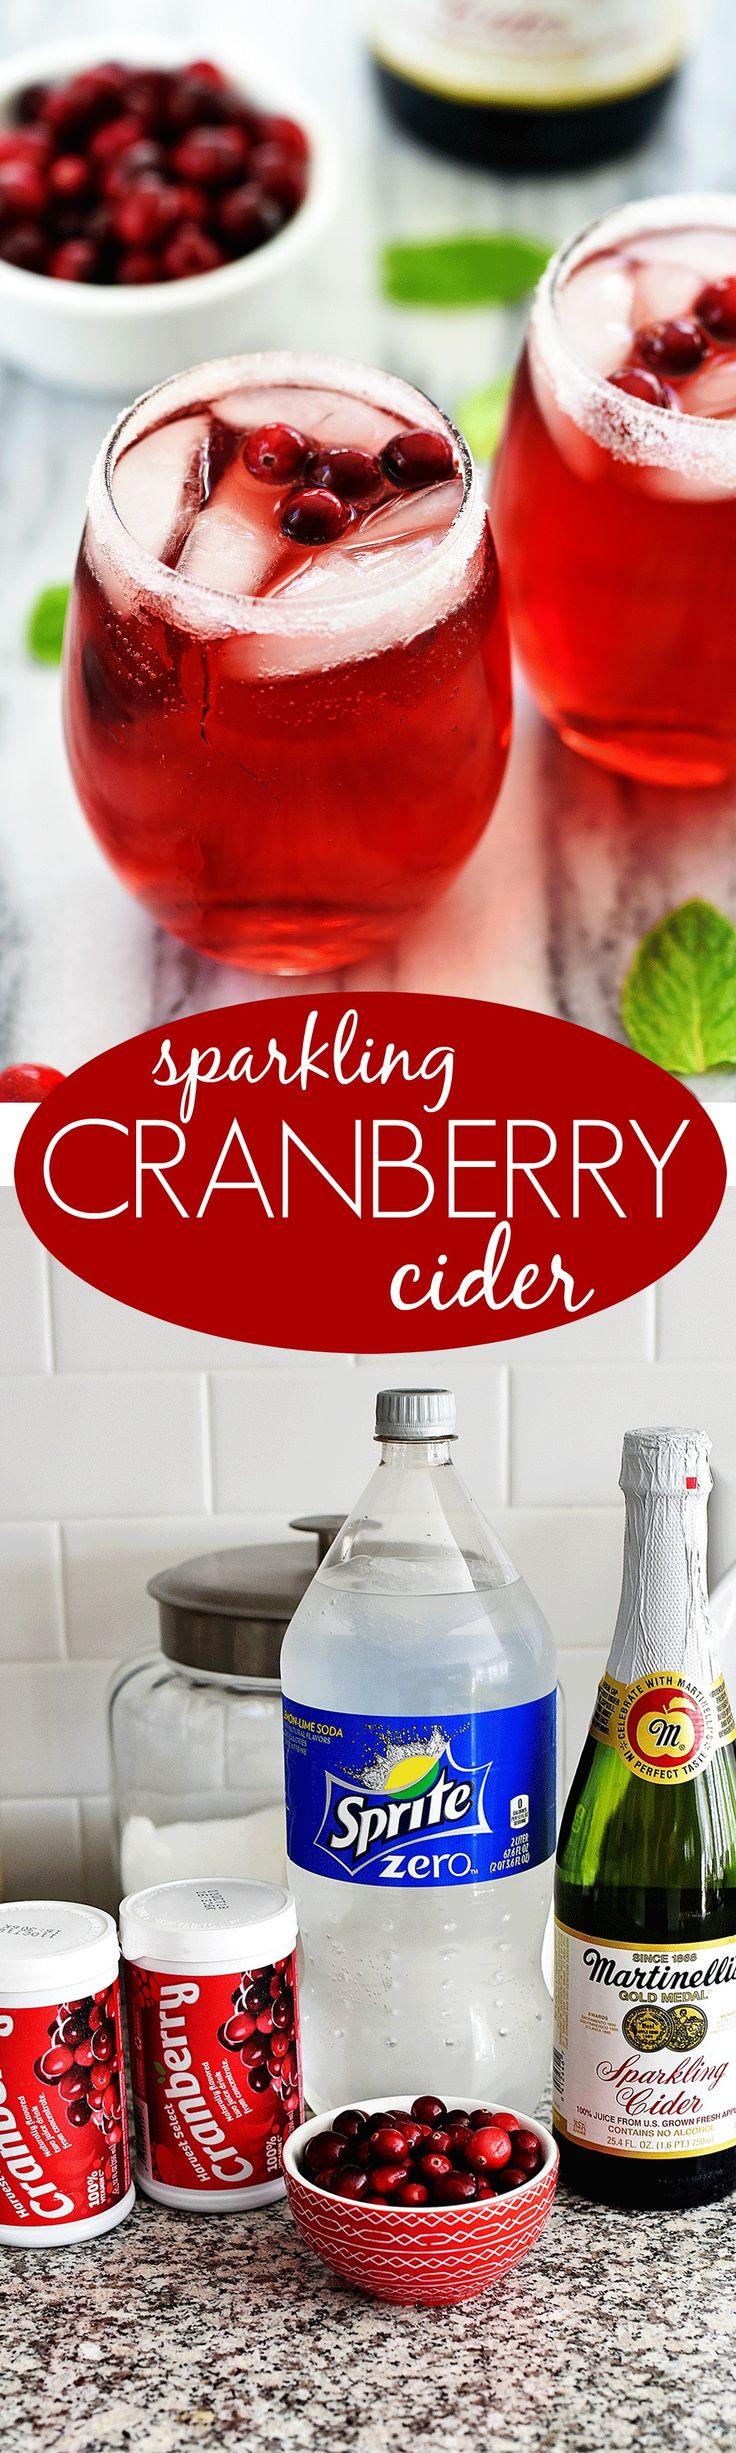 Свадьба - Sparkling Cranberry Cider